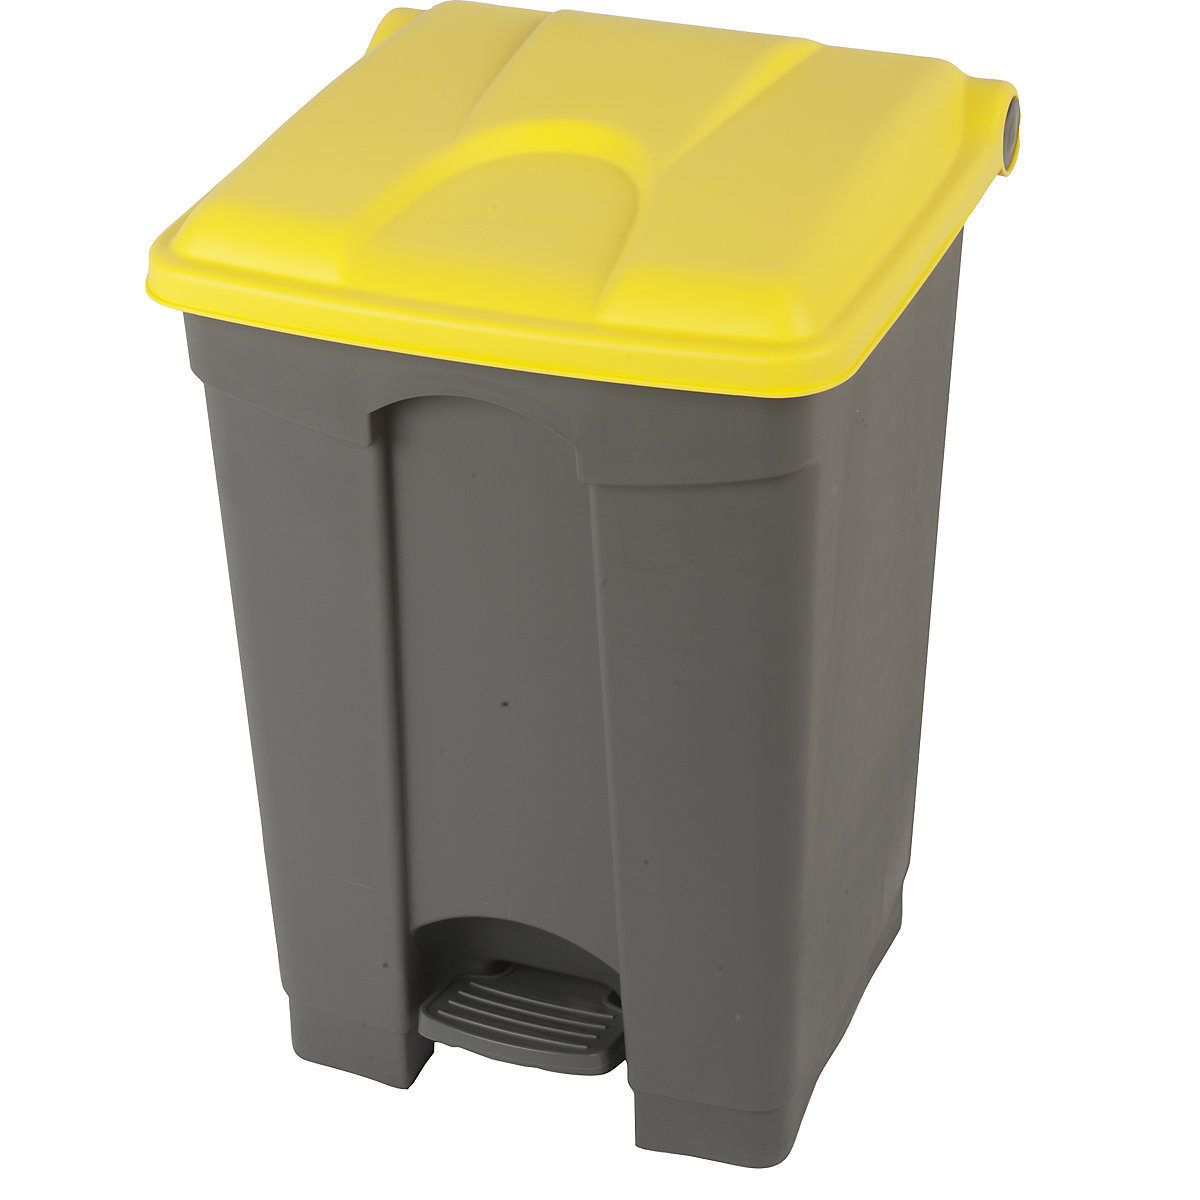 Spremnik za otpad s papučicom, volumen 45 l, ŠxVxD 410 x 600 x 400 mm, u sivoj boji, poklopac u žutoj boji-13